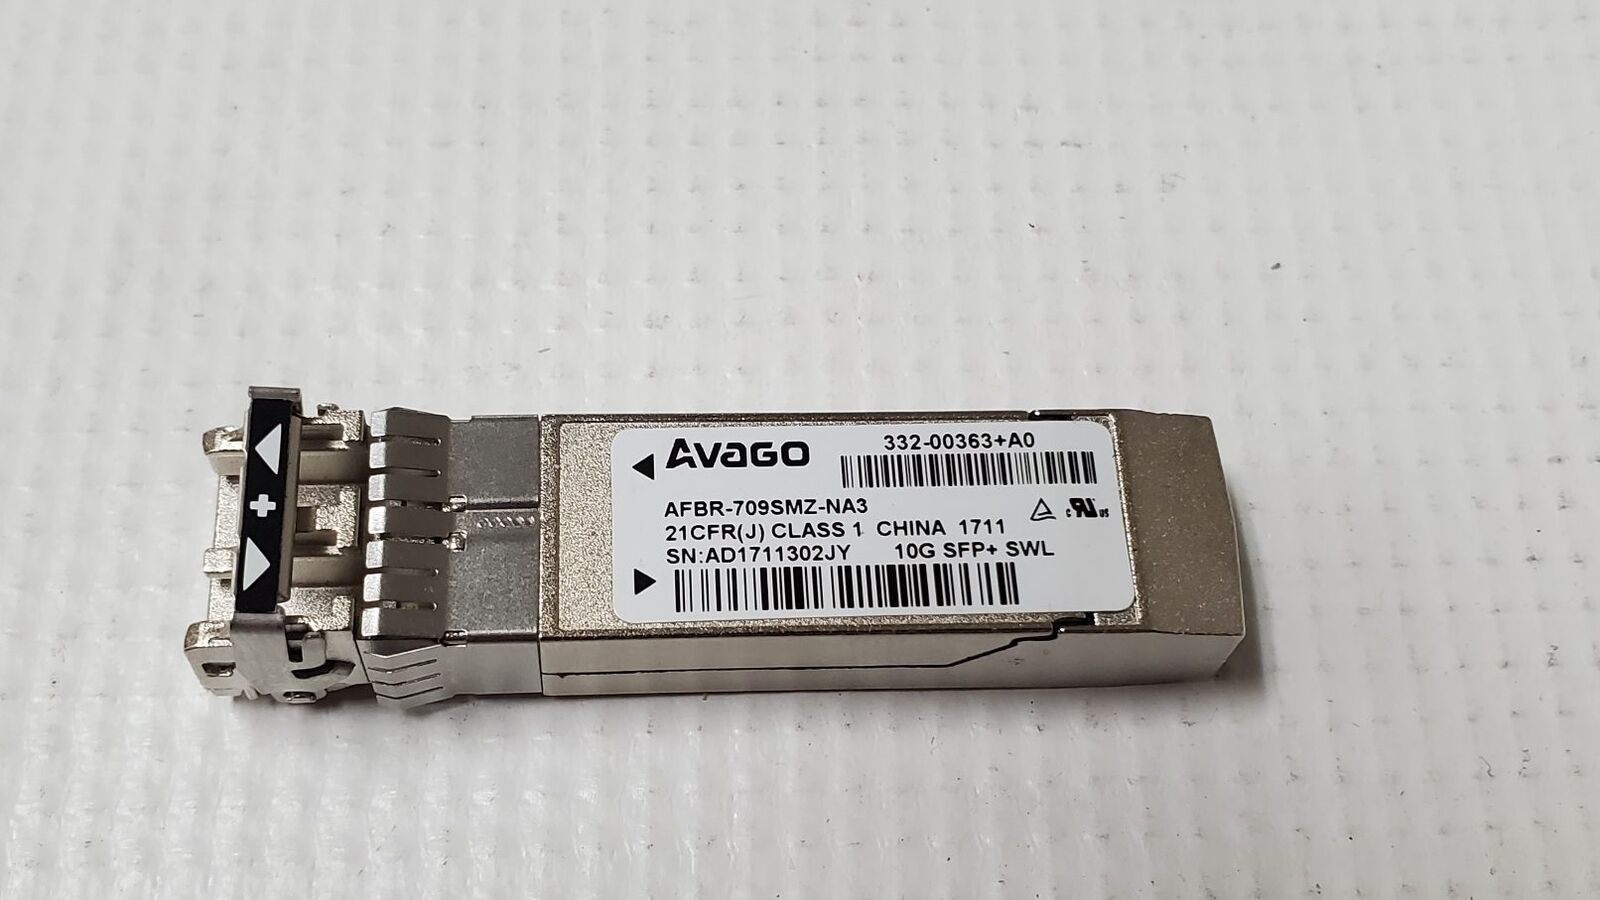 Avago 10Gb SFP+ Transceiver AFBR-703SMZ-NA3